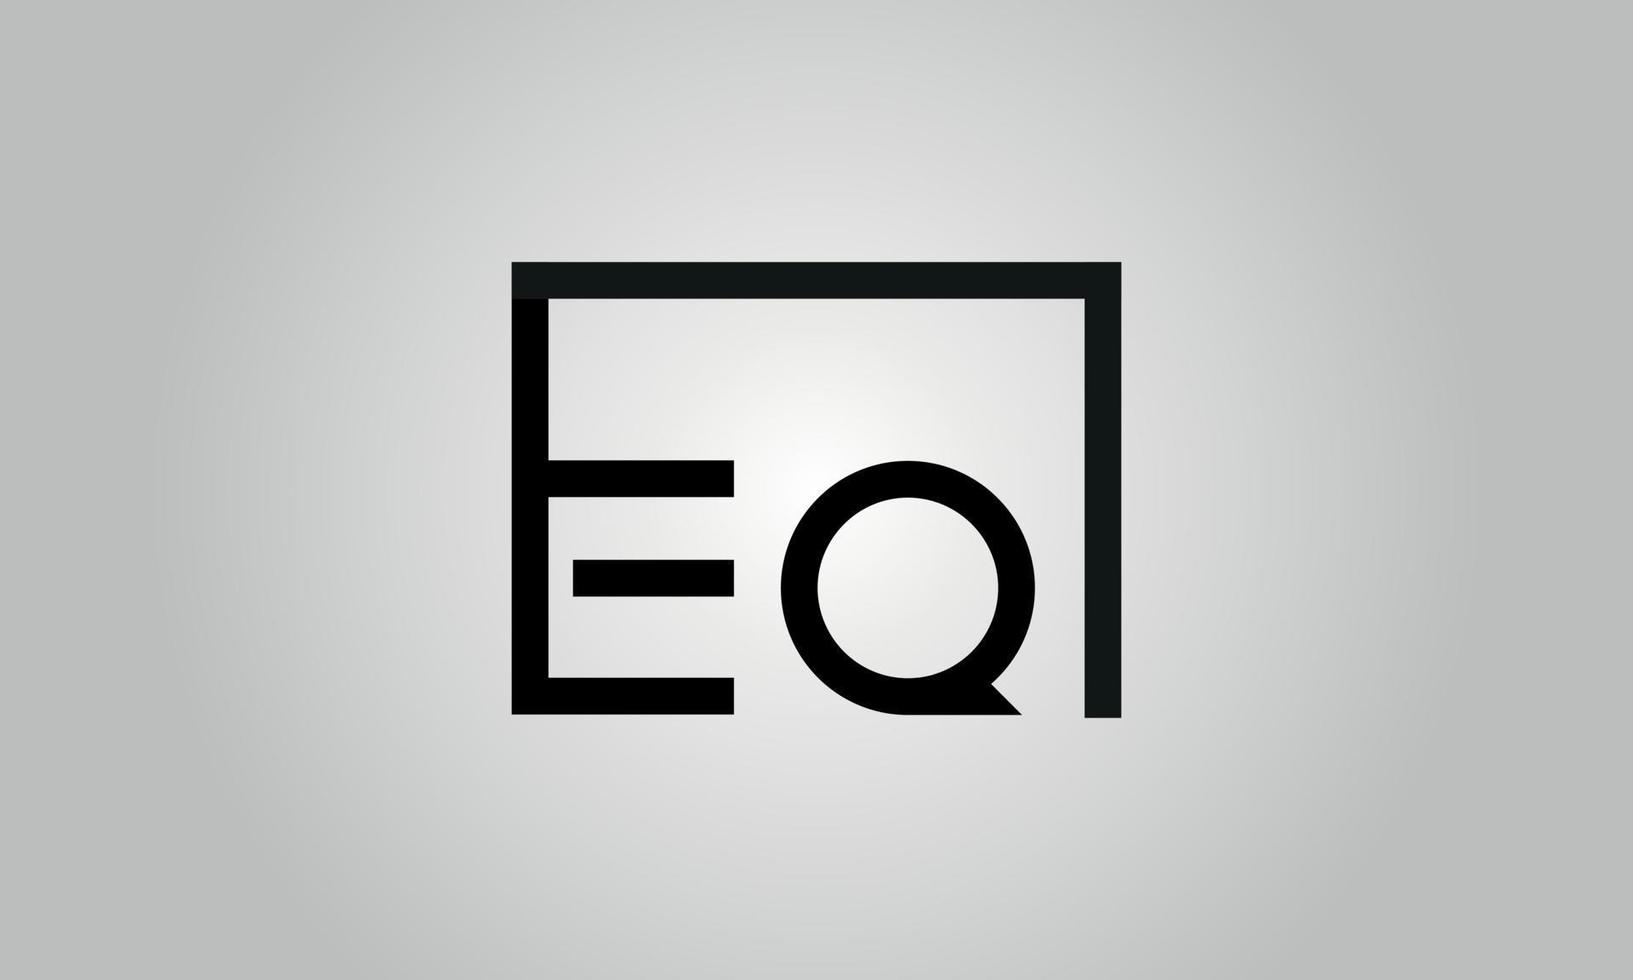 création de logo lettre eq. logo eq avec forme carrée dans le modèle vectoriel gratuit de couleurs noires.